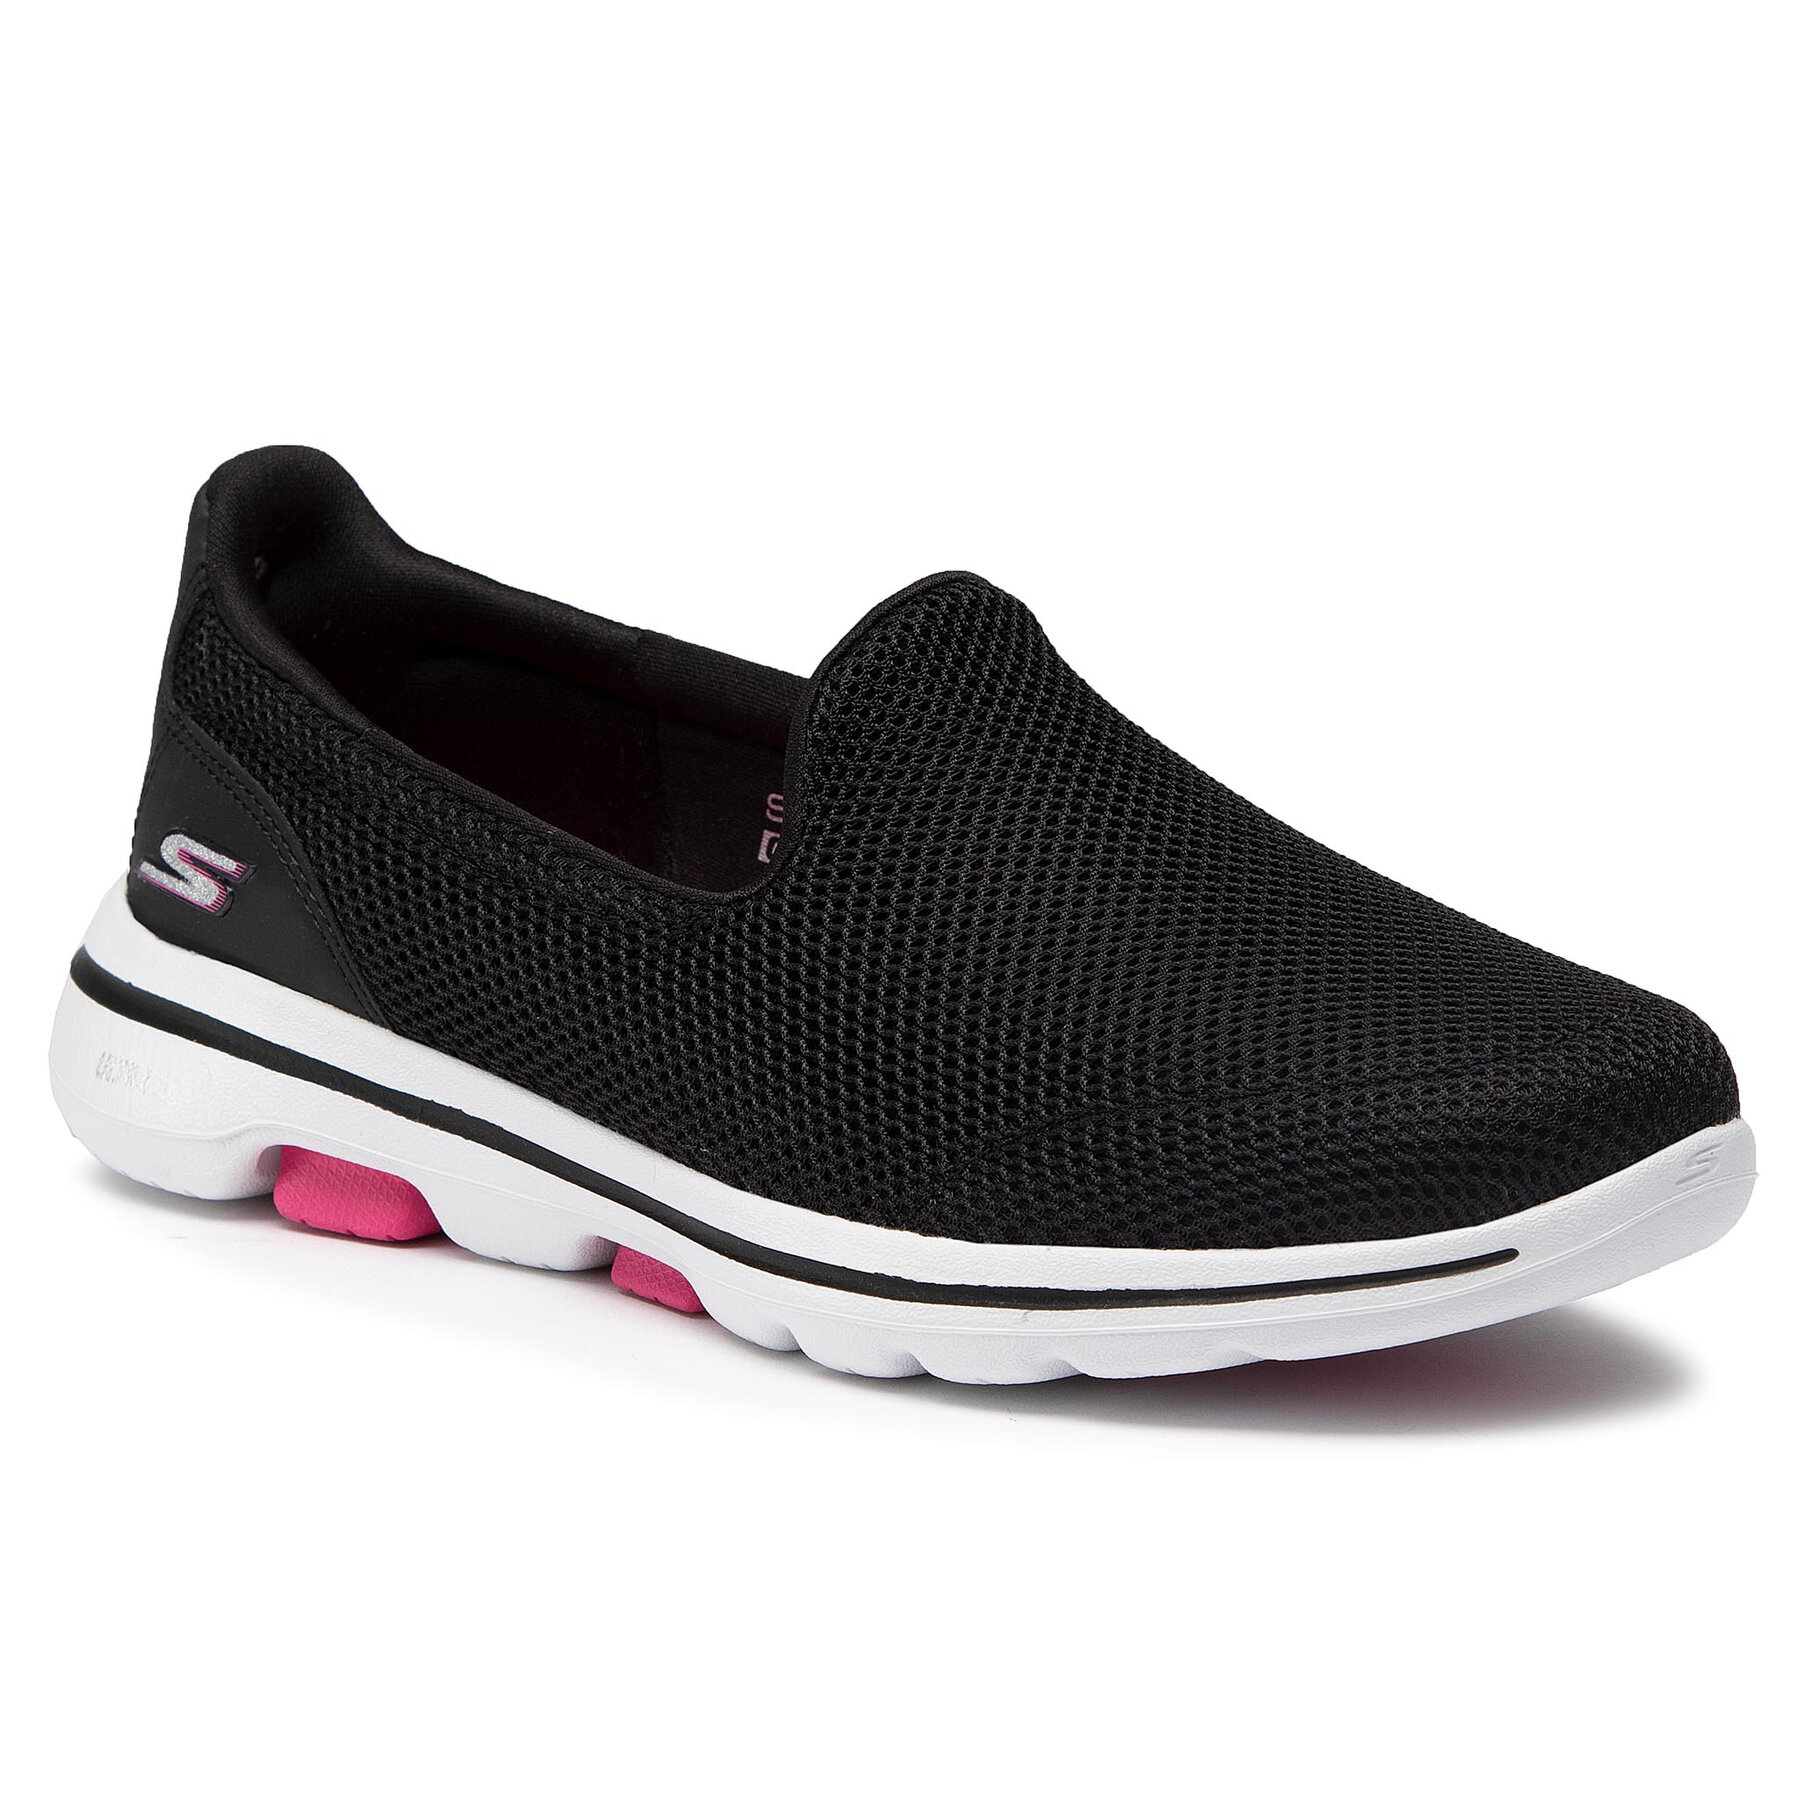 Pantofi Skechers Go Walk 5 15901/BKHP Black/Hot Pink epantofi.ro imagine noua